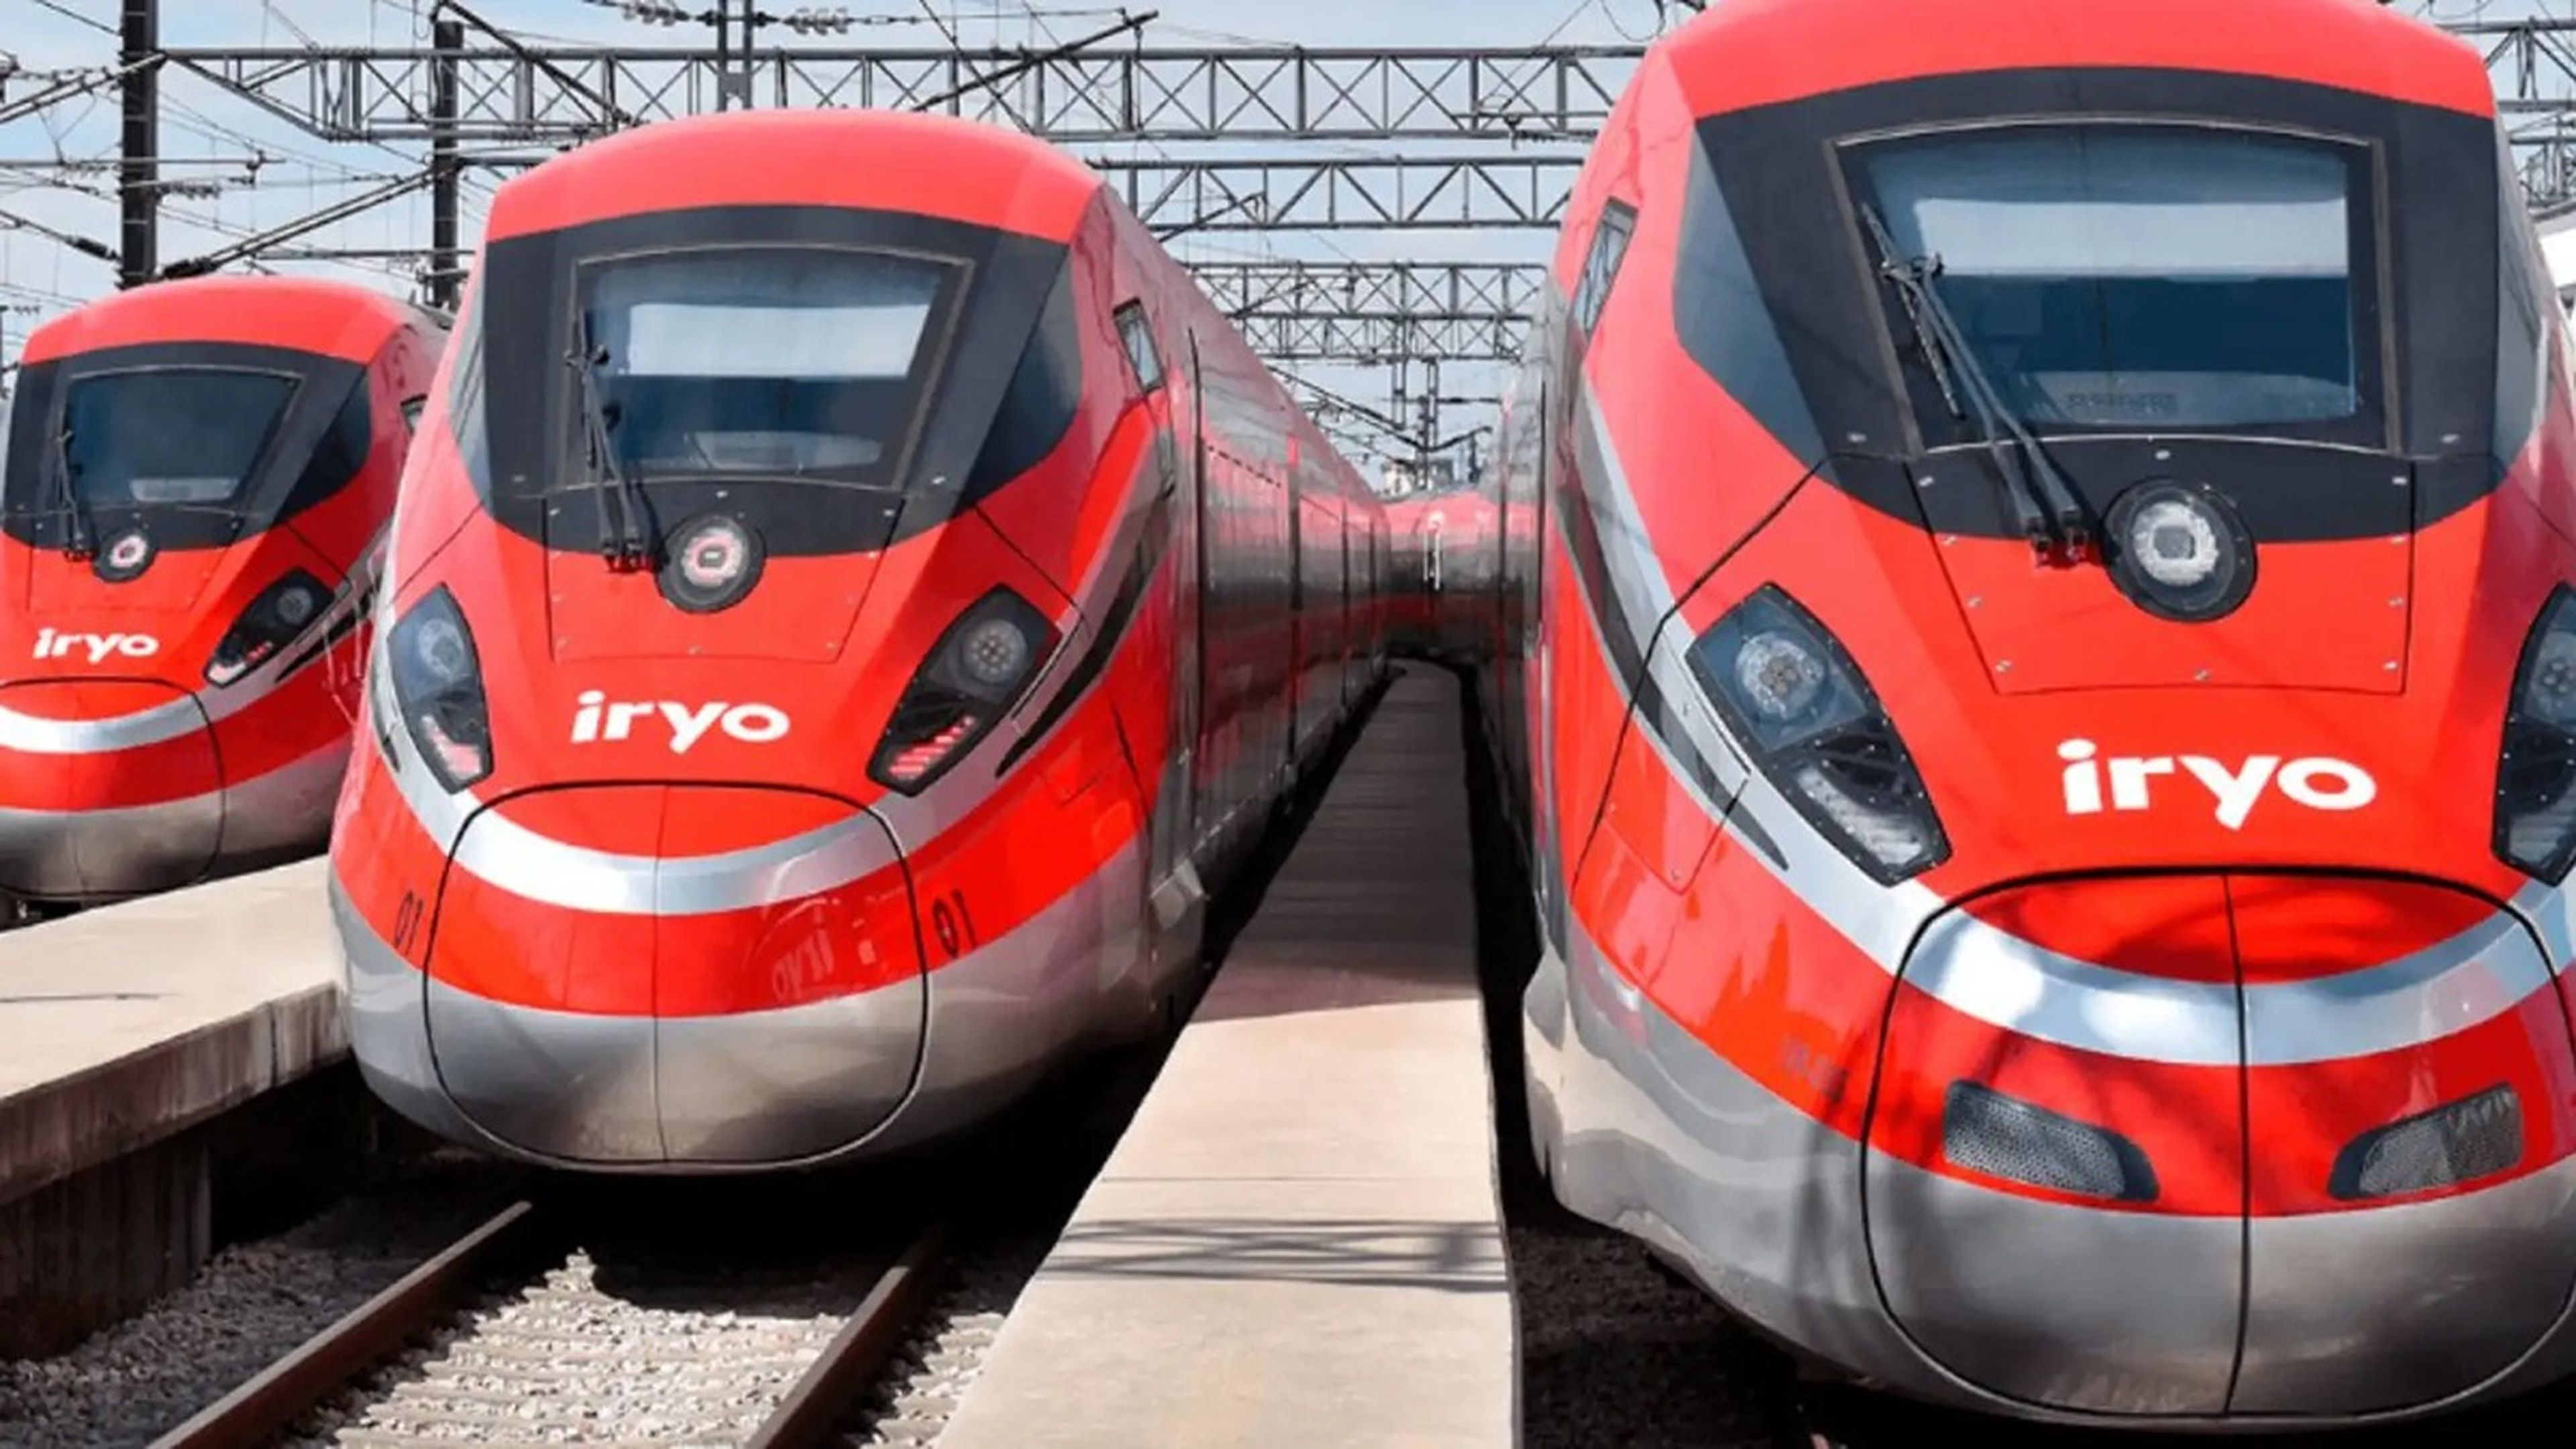 Billetes iryo: destinos, precios y cómo funciona las tarifas flexibles del primer operador privado de trenes AVE